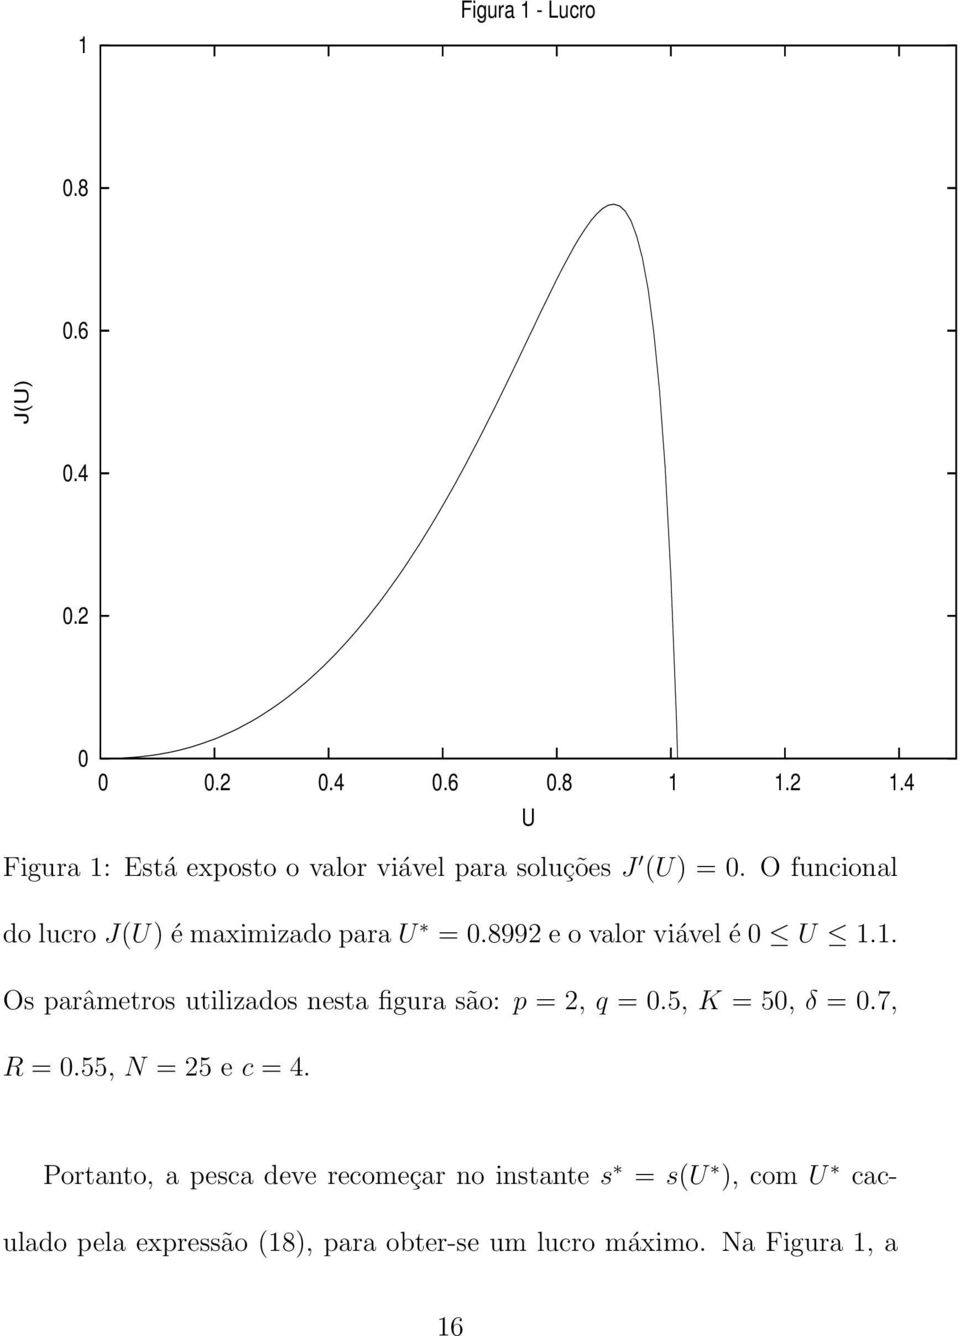 O funcional do lucro JU) é maximizado para U = 0.8992 e o valor viável é 0 U 1.